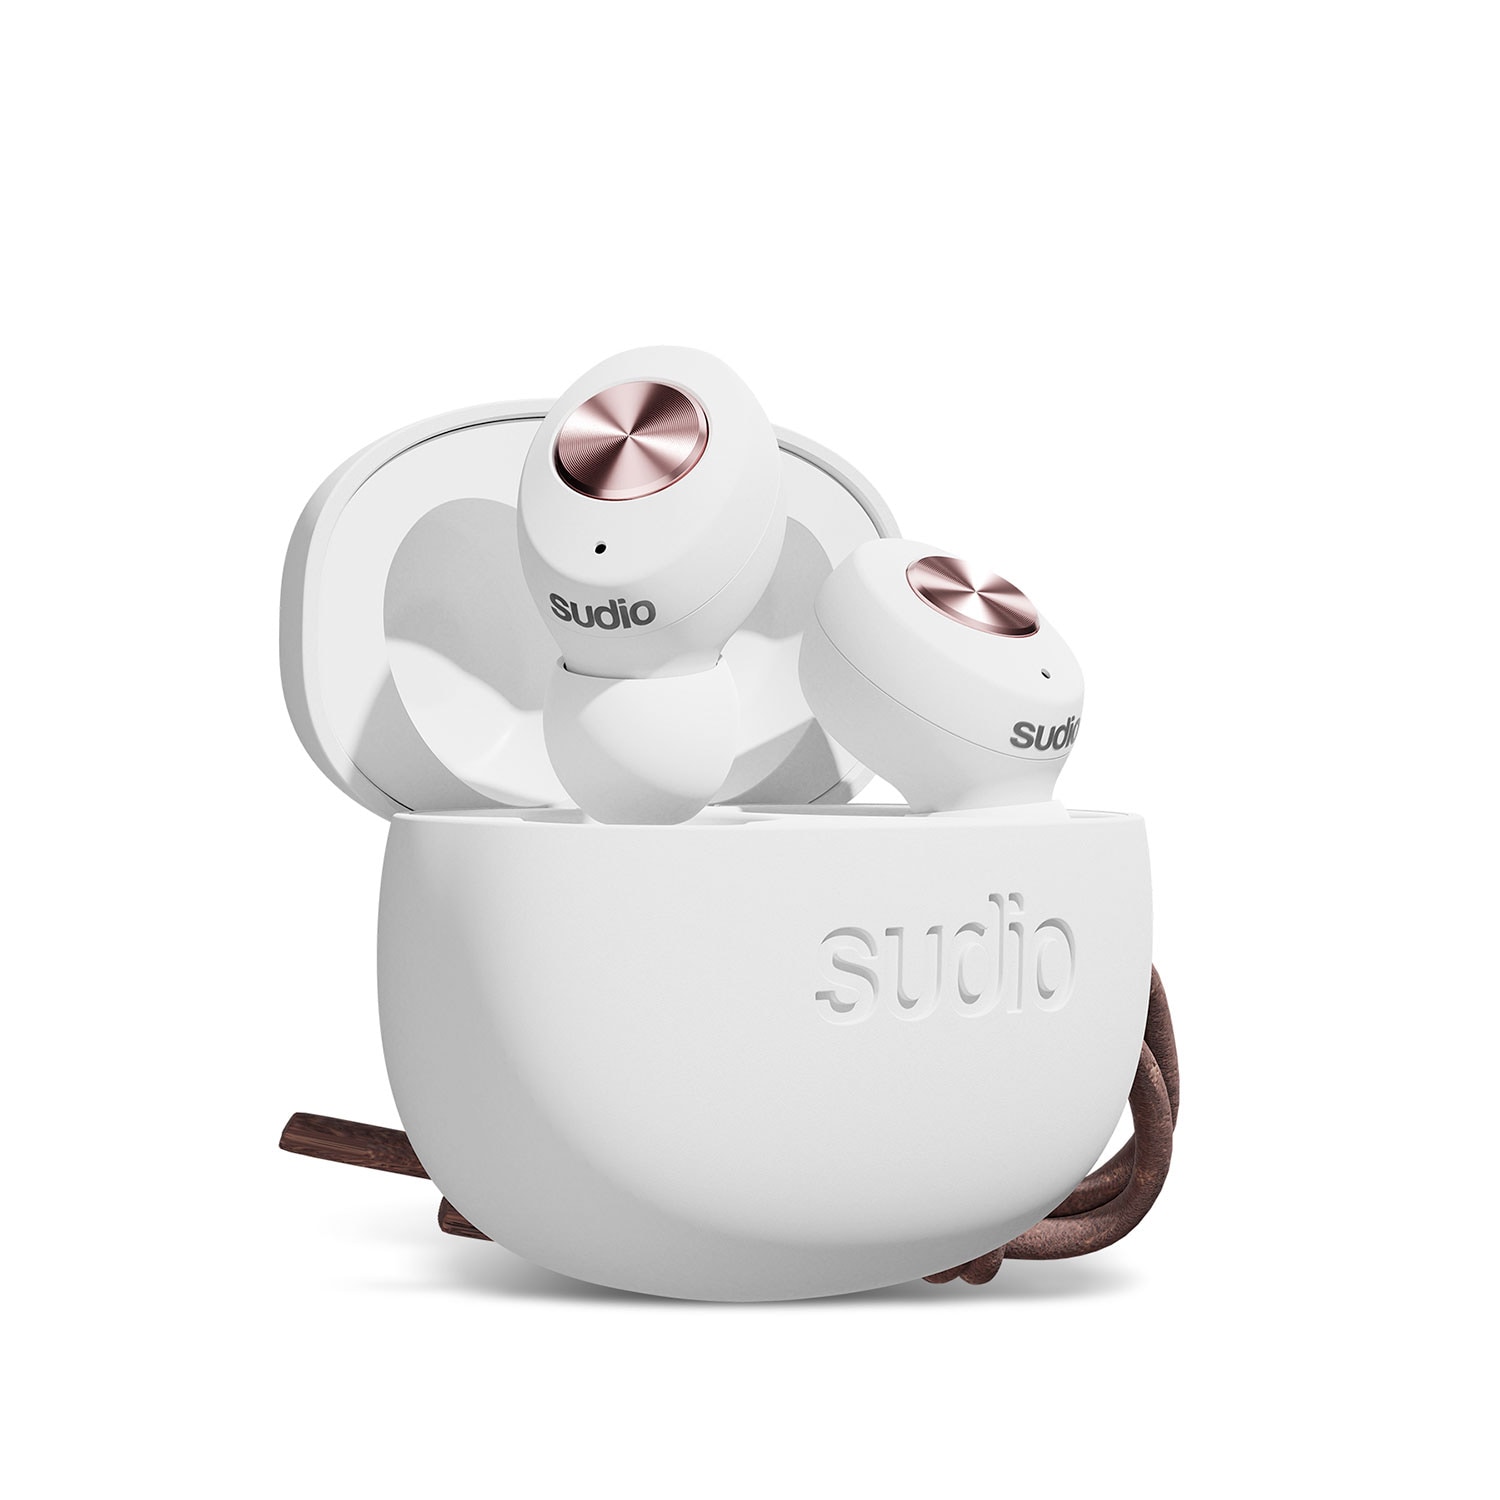 »Sudio online Wireless Anrufe und Steuerung Musik-True bei sudio wireless für In-Ear-Kopfhörer OTTO Tolv«, integrierte jetzt